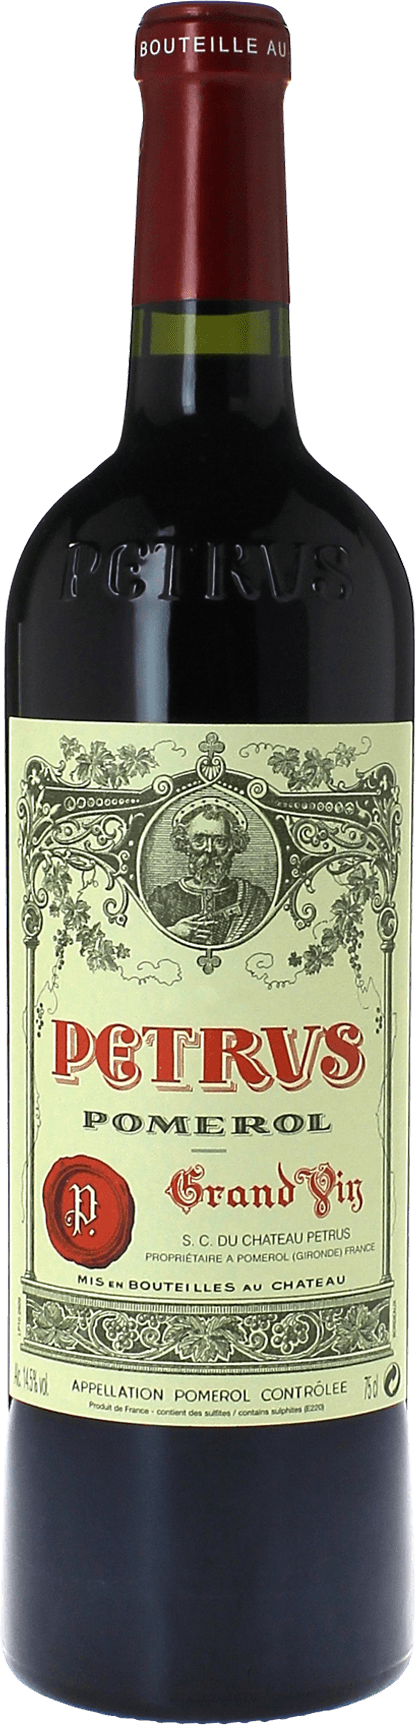 Petrus 1979  Pomerol, Bordeaux rouge